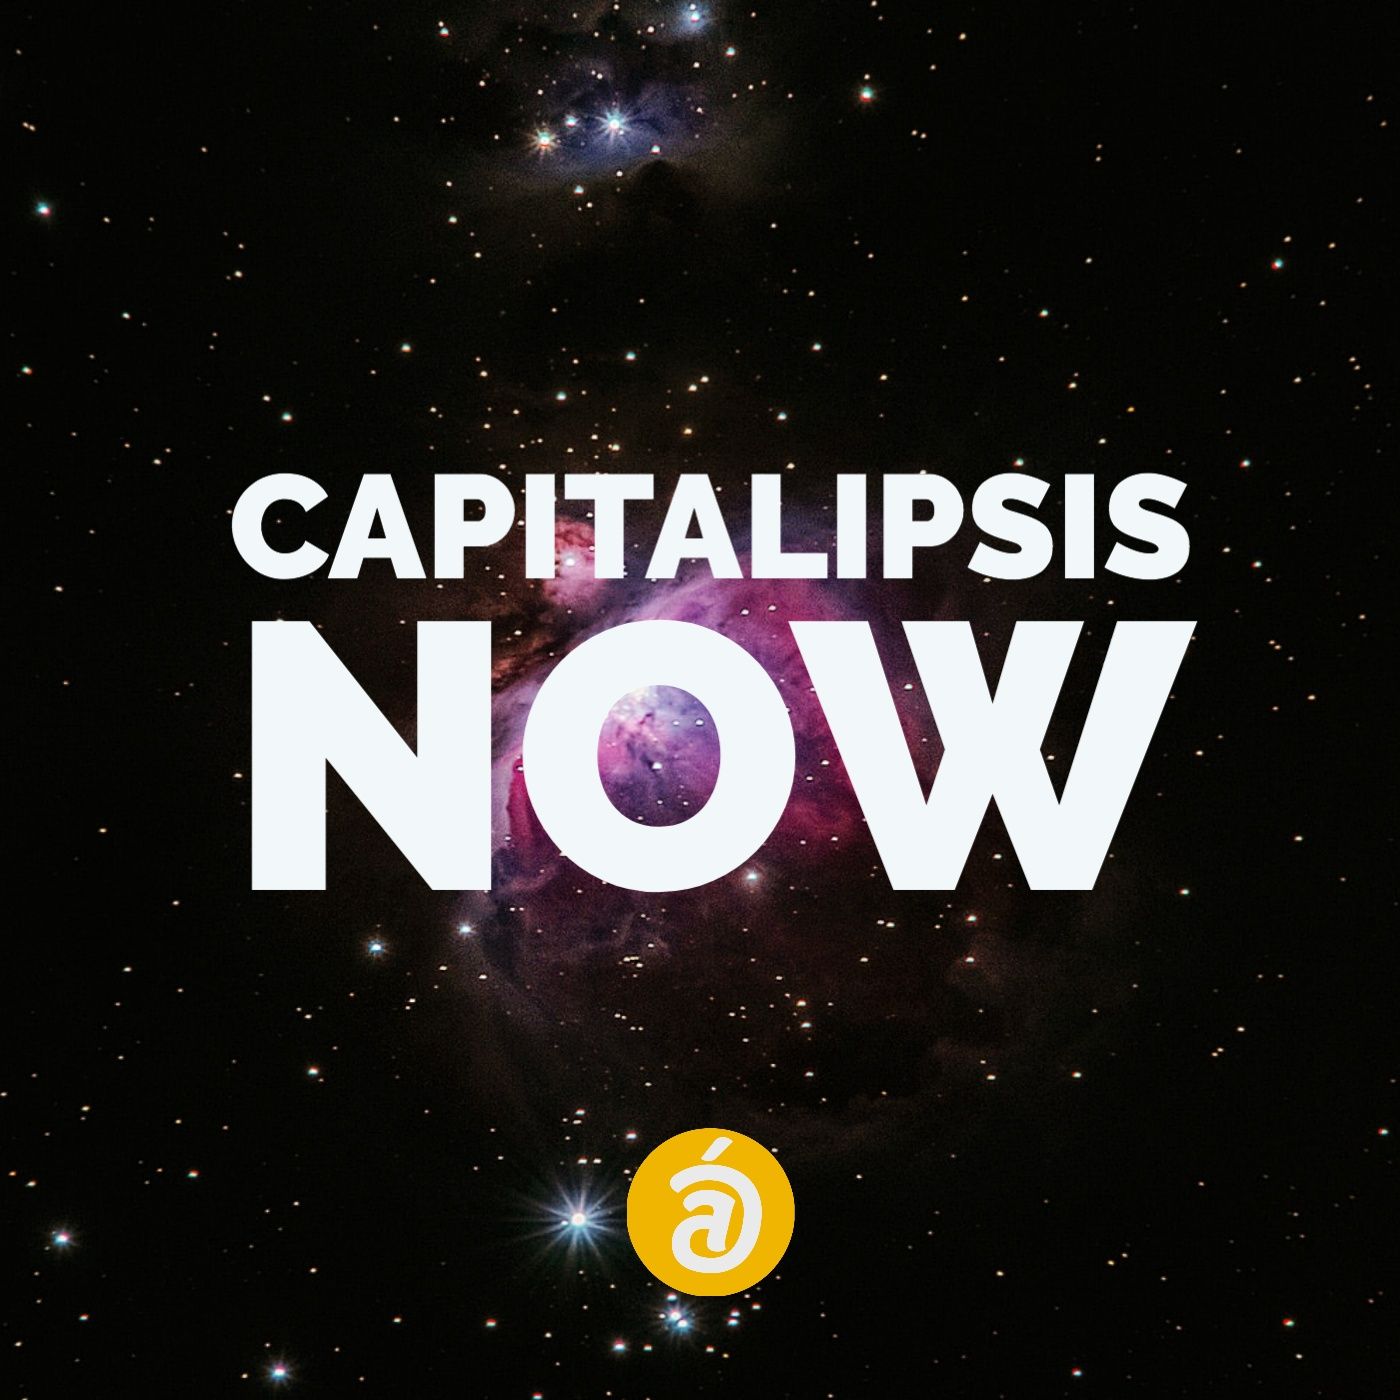 Capitalipsis Now